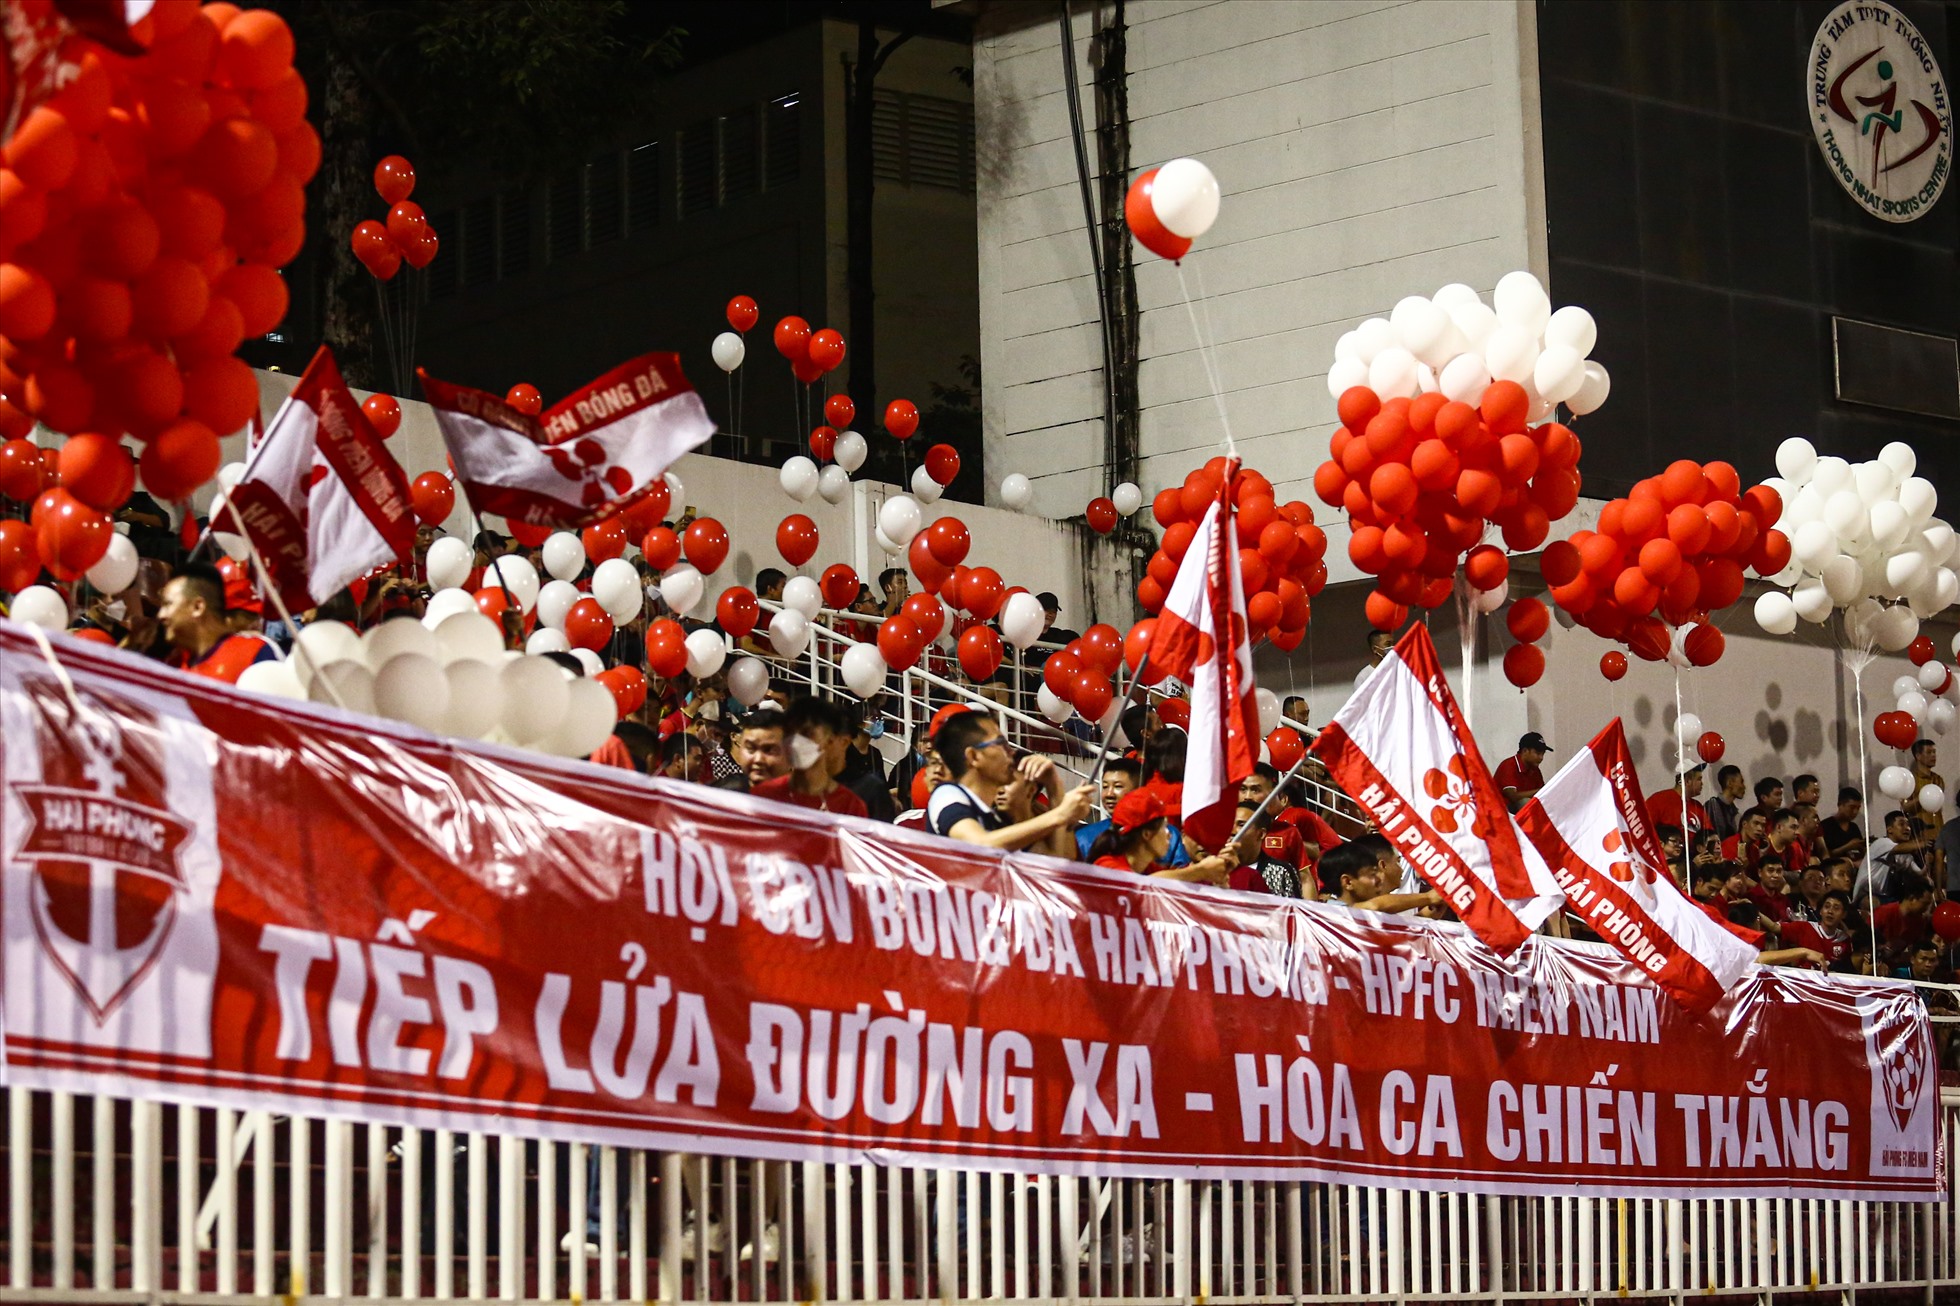 Với sự tiếp lửa từ các cổ động viên, câu lạc bộ Hải Phòng ra sân đầy quyết tâm, đặt mục tiêu giành trọn 3 điểm trước đội chủ nhà Sài Gòn.